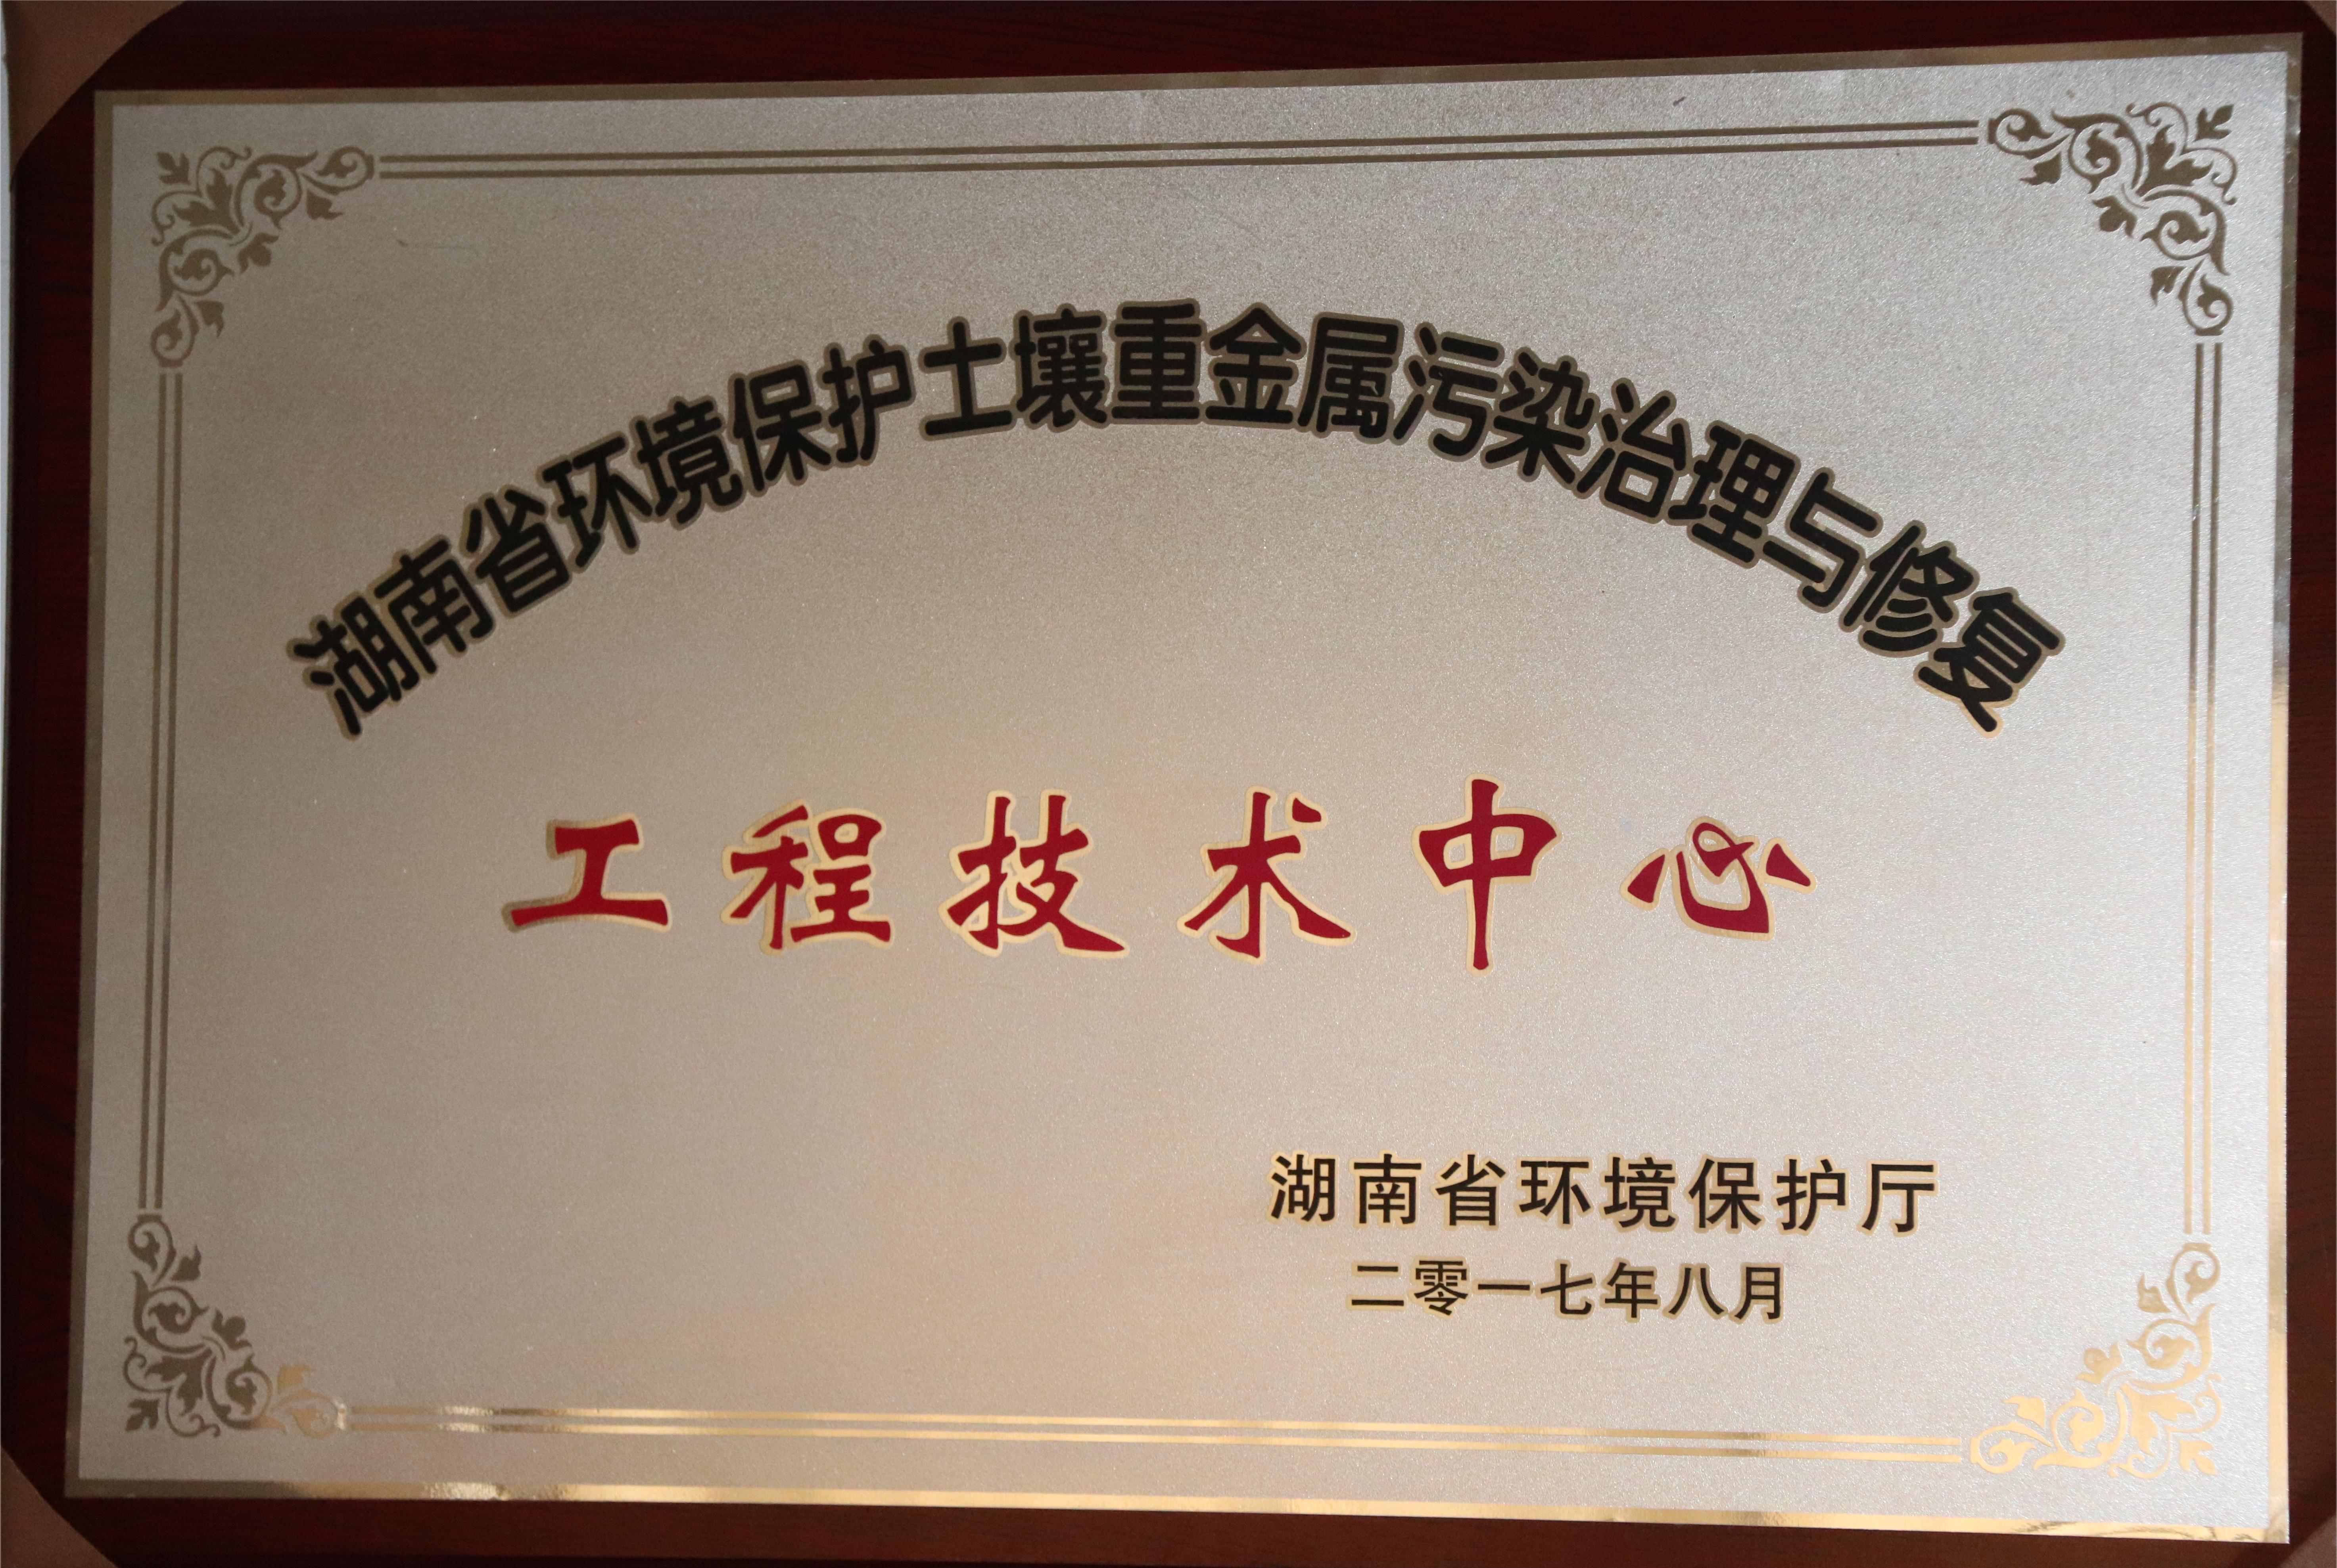 湖南省环境保护土壤重金属污染治理与修复工程技术中心